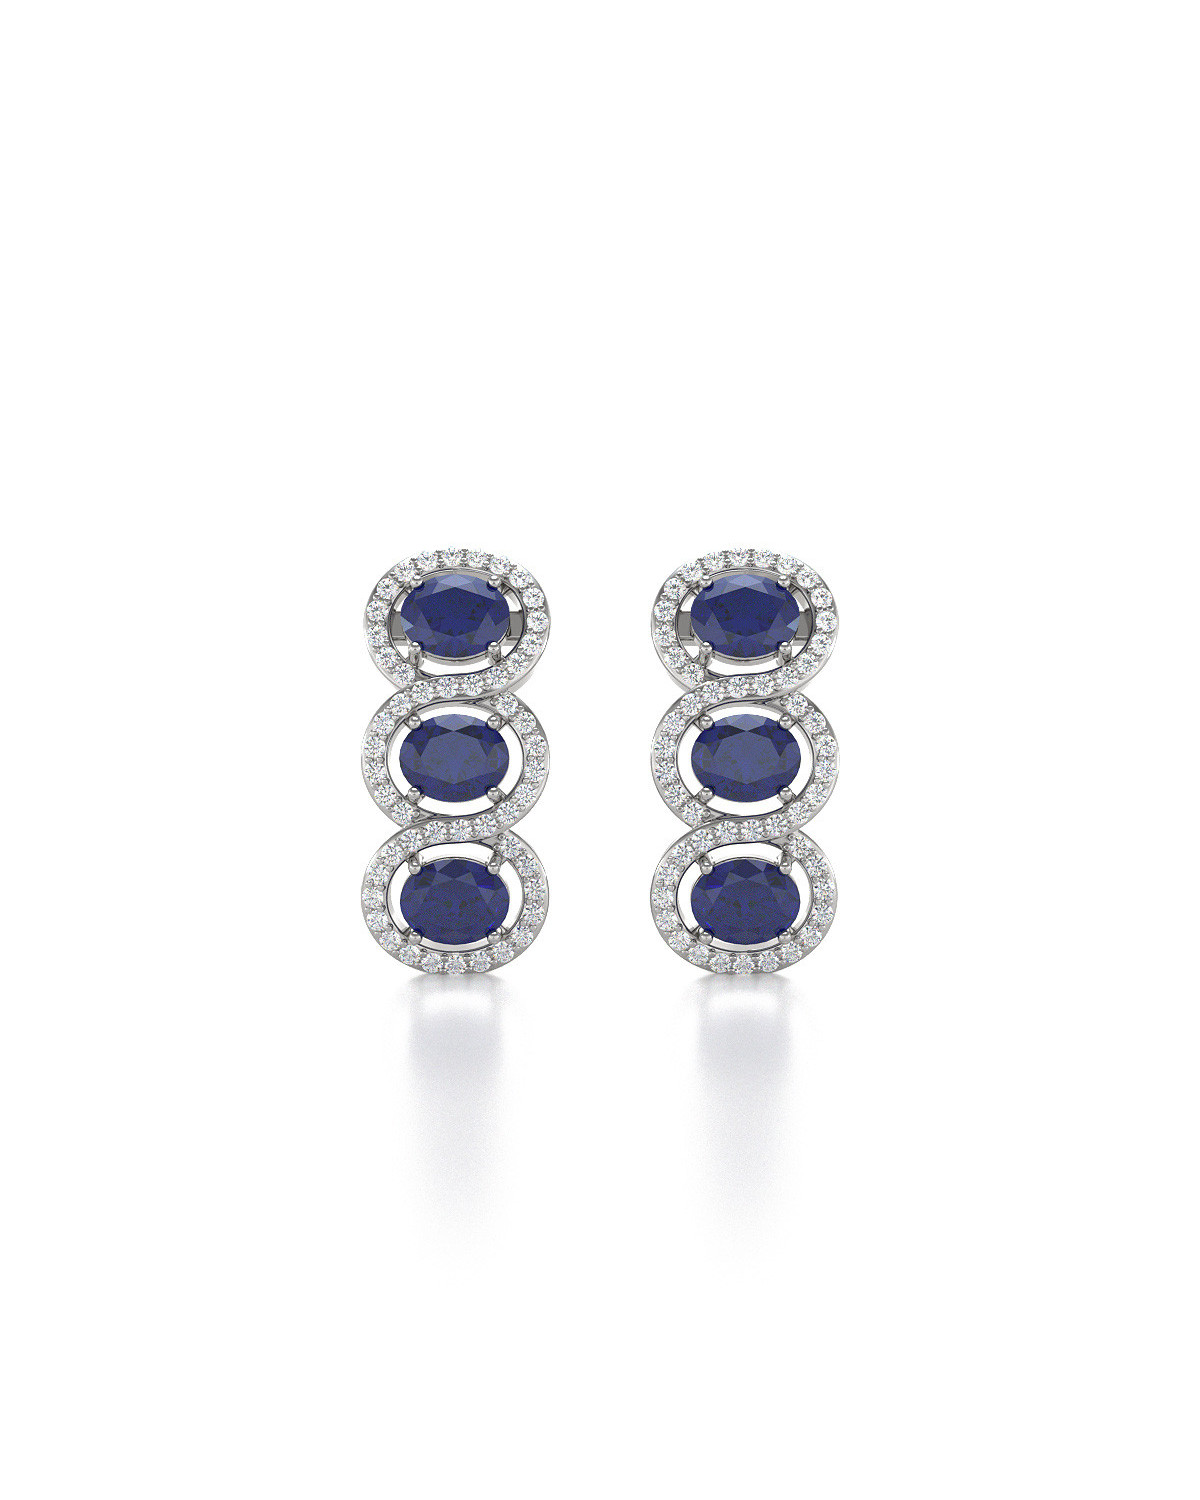 14K Gold Sapphire Diamonds Earrings